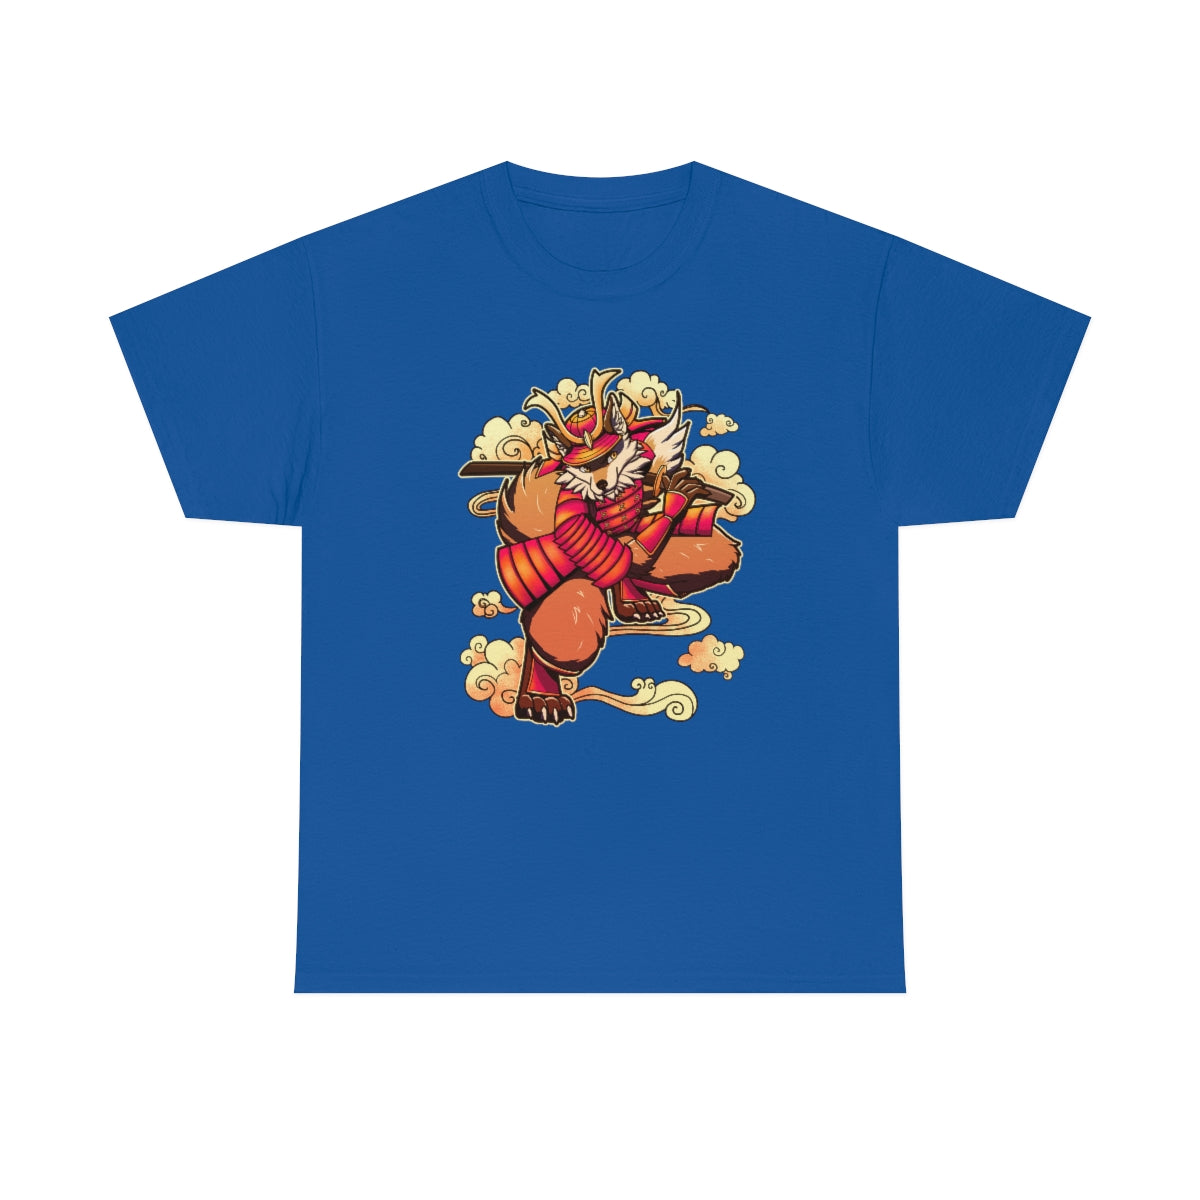 Samurai - T-Shirt T-Shirt Artworktee Royal Blue S 